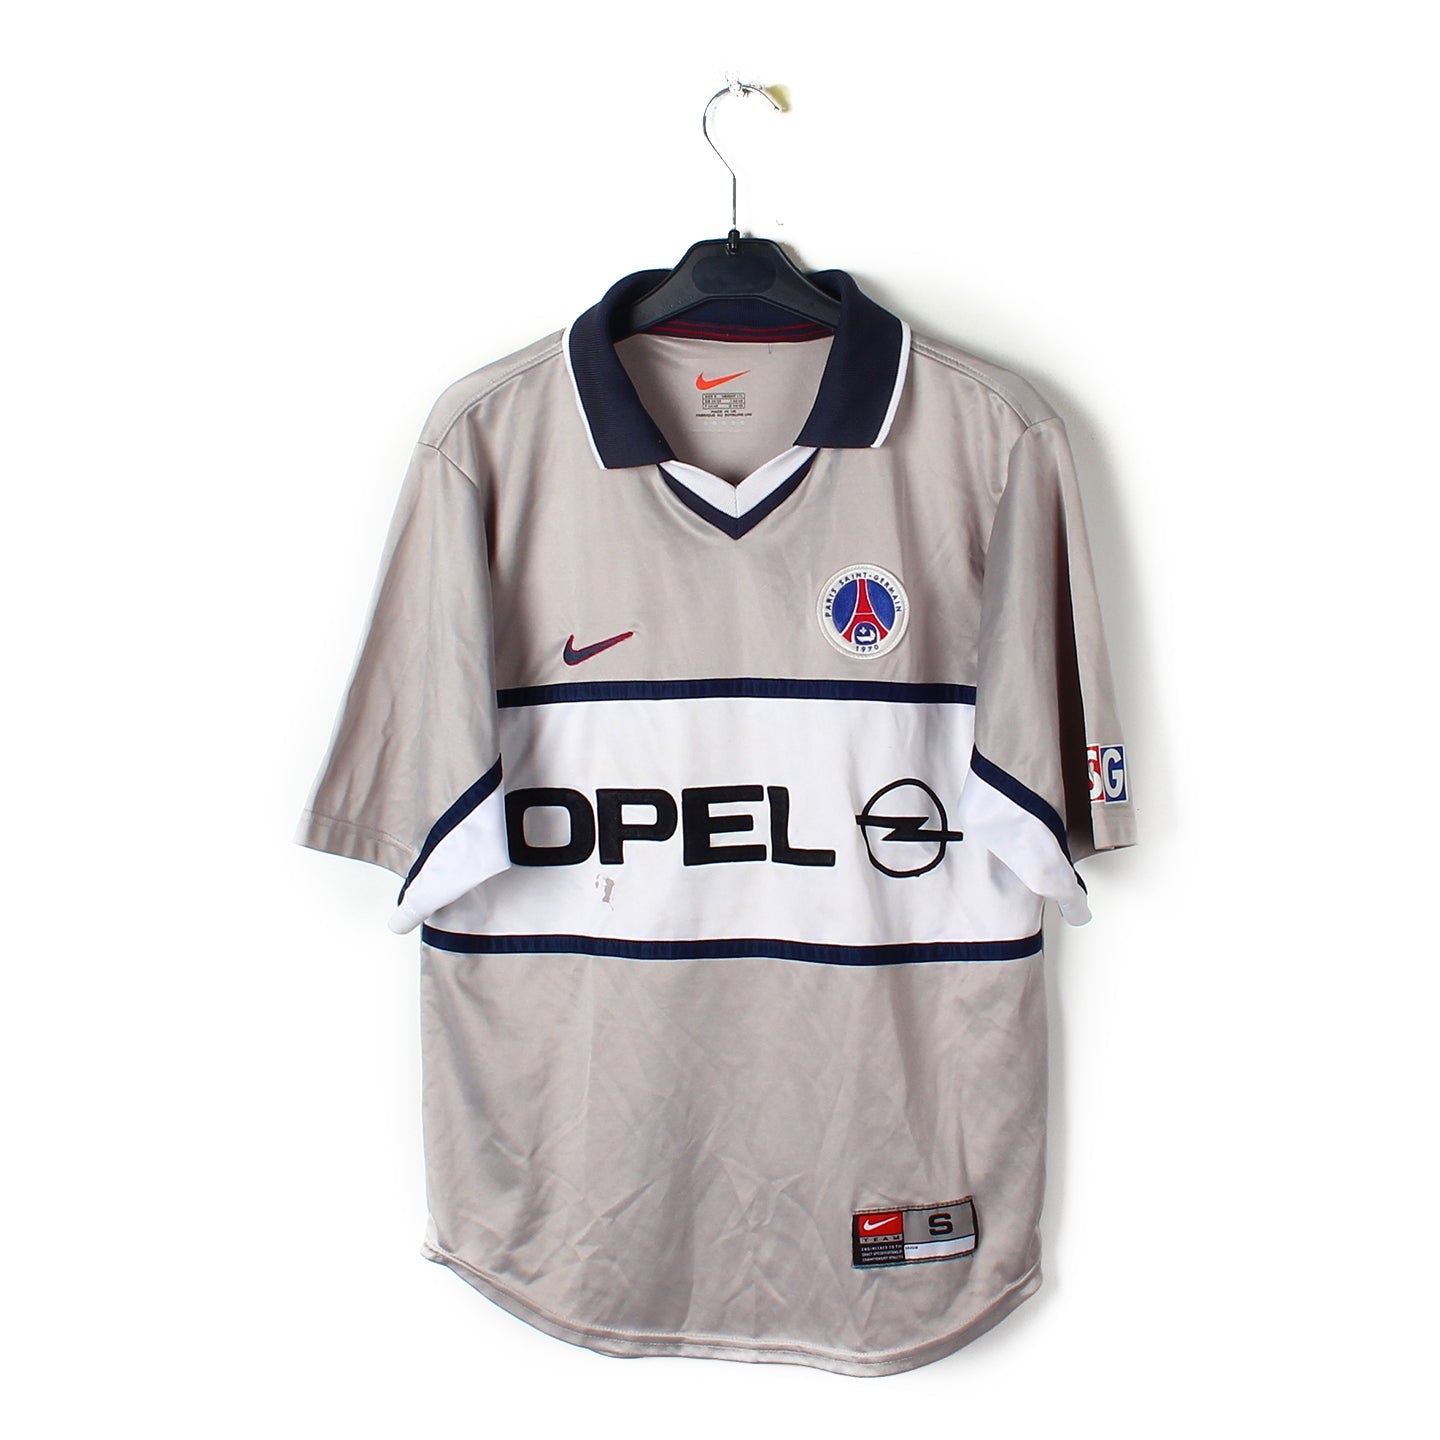 Serviette PSG vintage - Saison 1998/1999 - Disponible sur